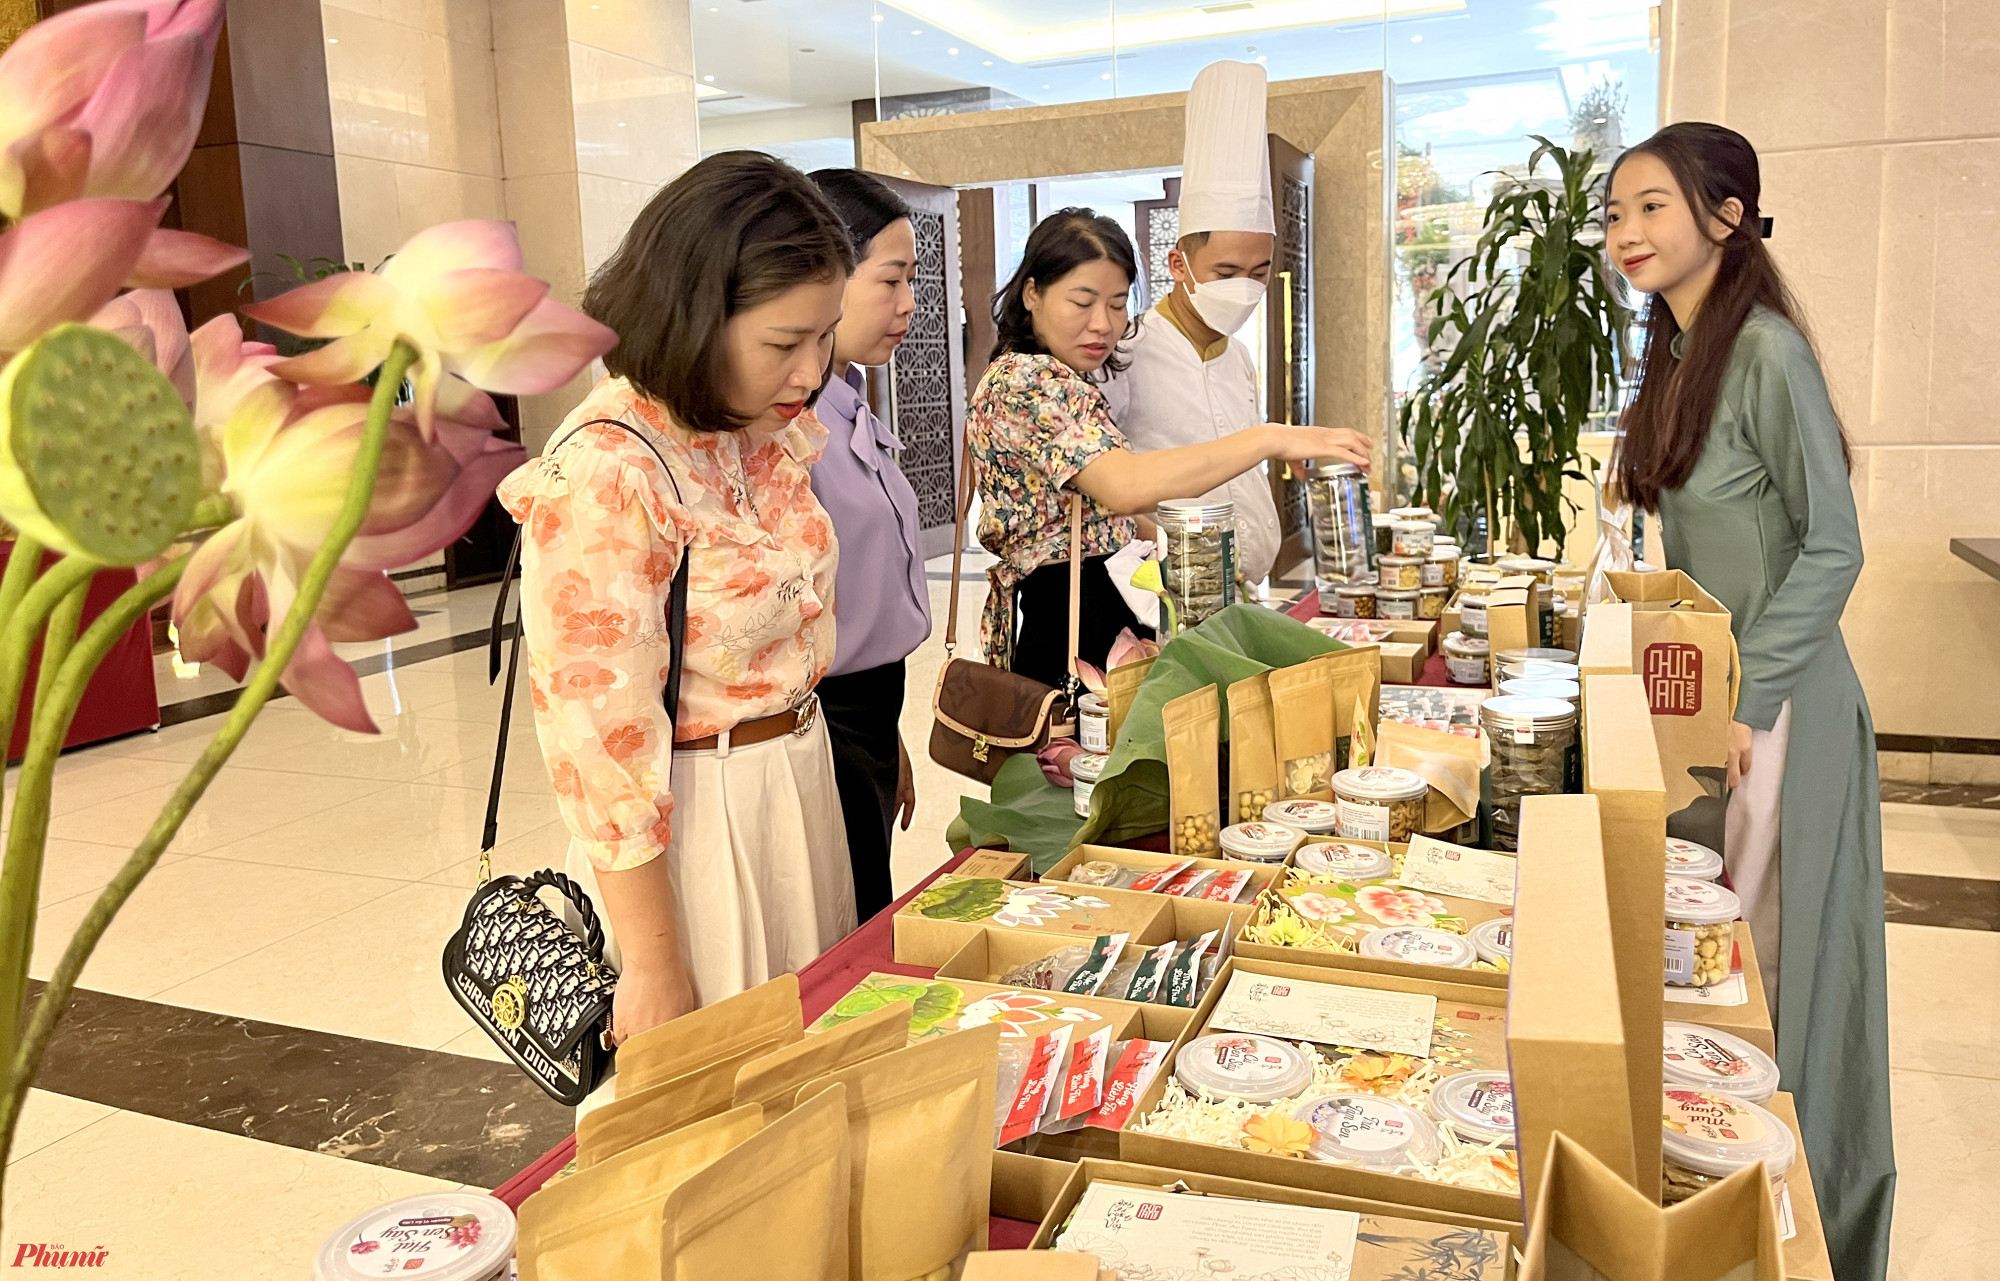 Ngoài khám phá các món ăn độc lạ chế biến từ sen, người dân còn có thể xem, mua các sản phẩm được chế biến từ sen được trưng bày tại cuộc thi.